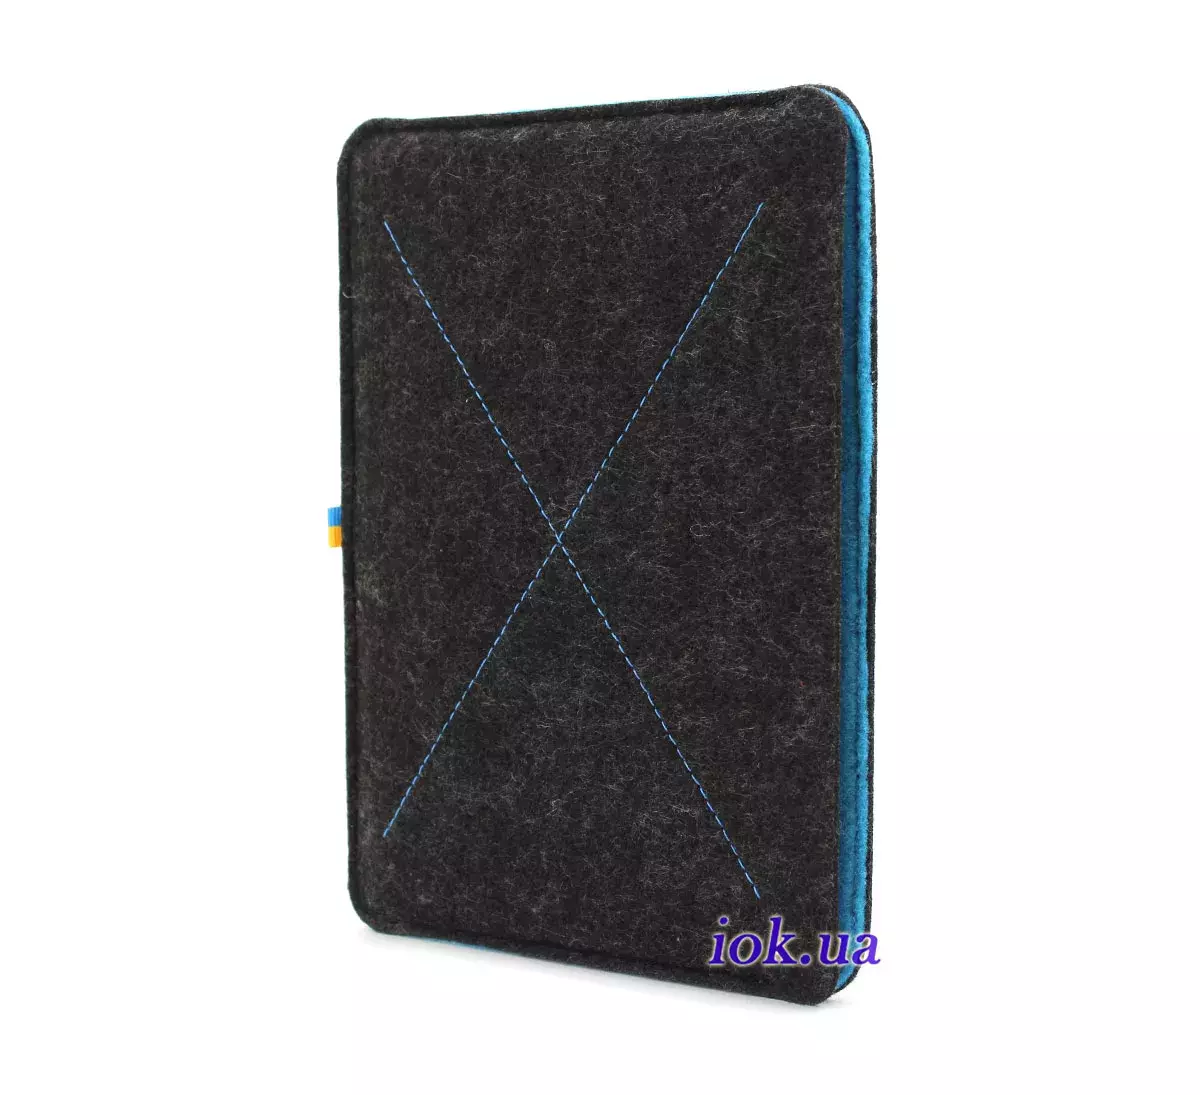 Фетровый чехол Freedom Lirri для iPad Mini 1/2/3, синий